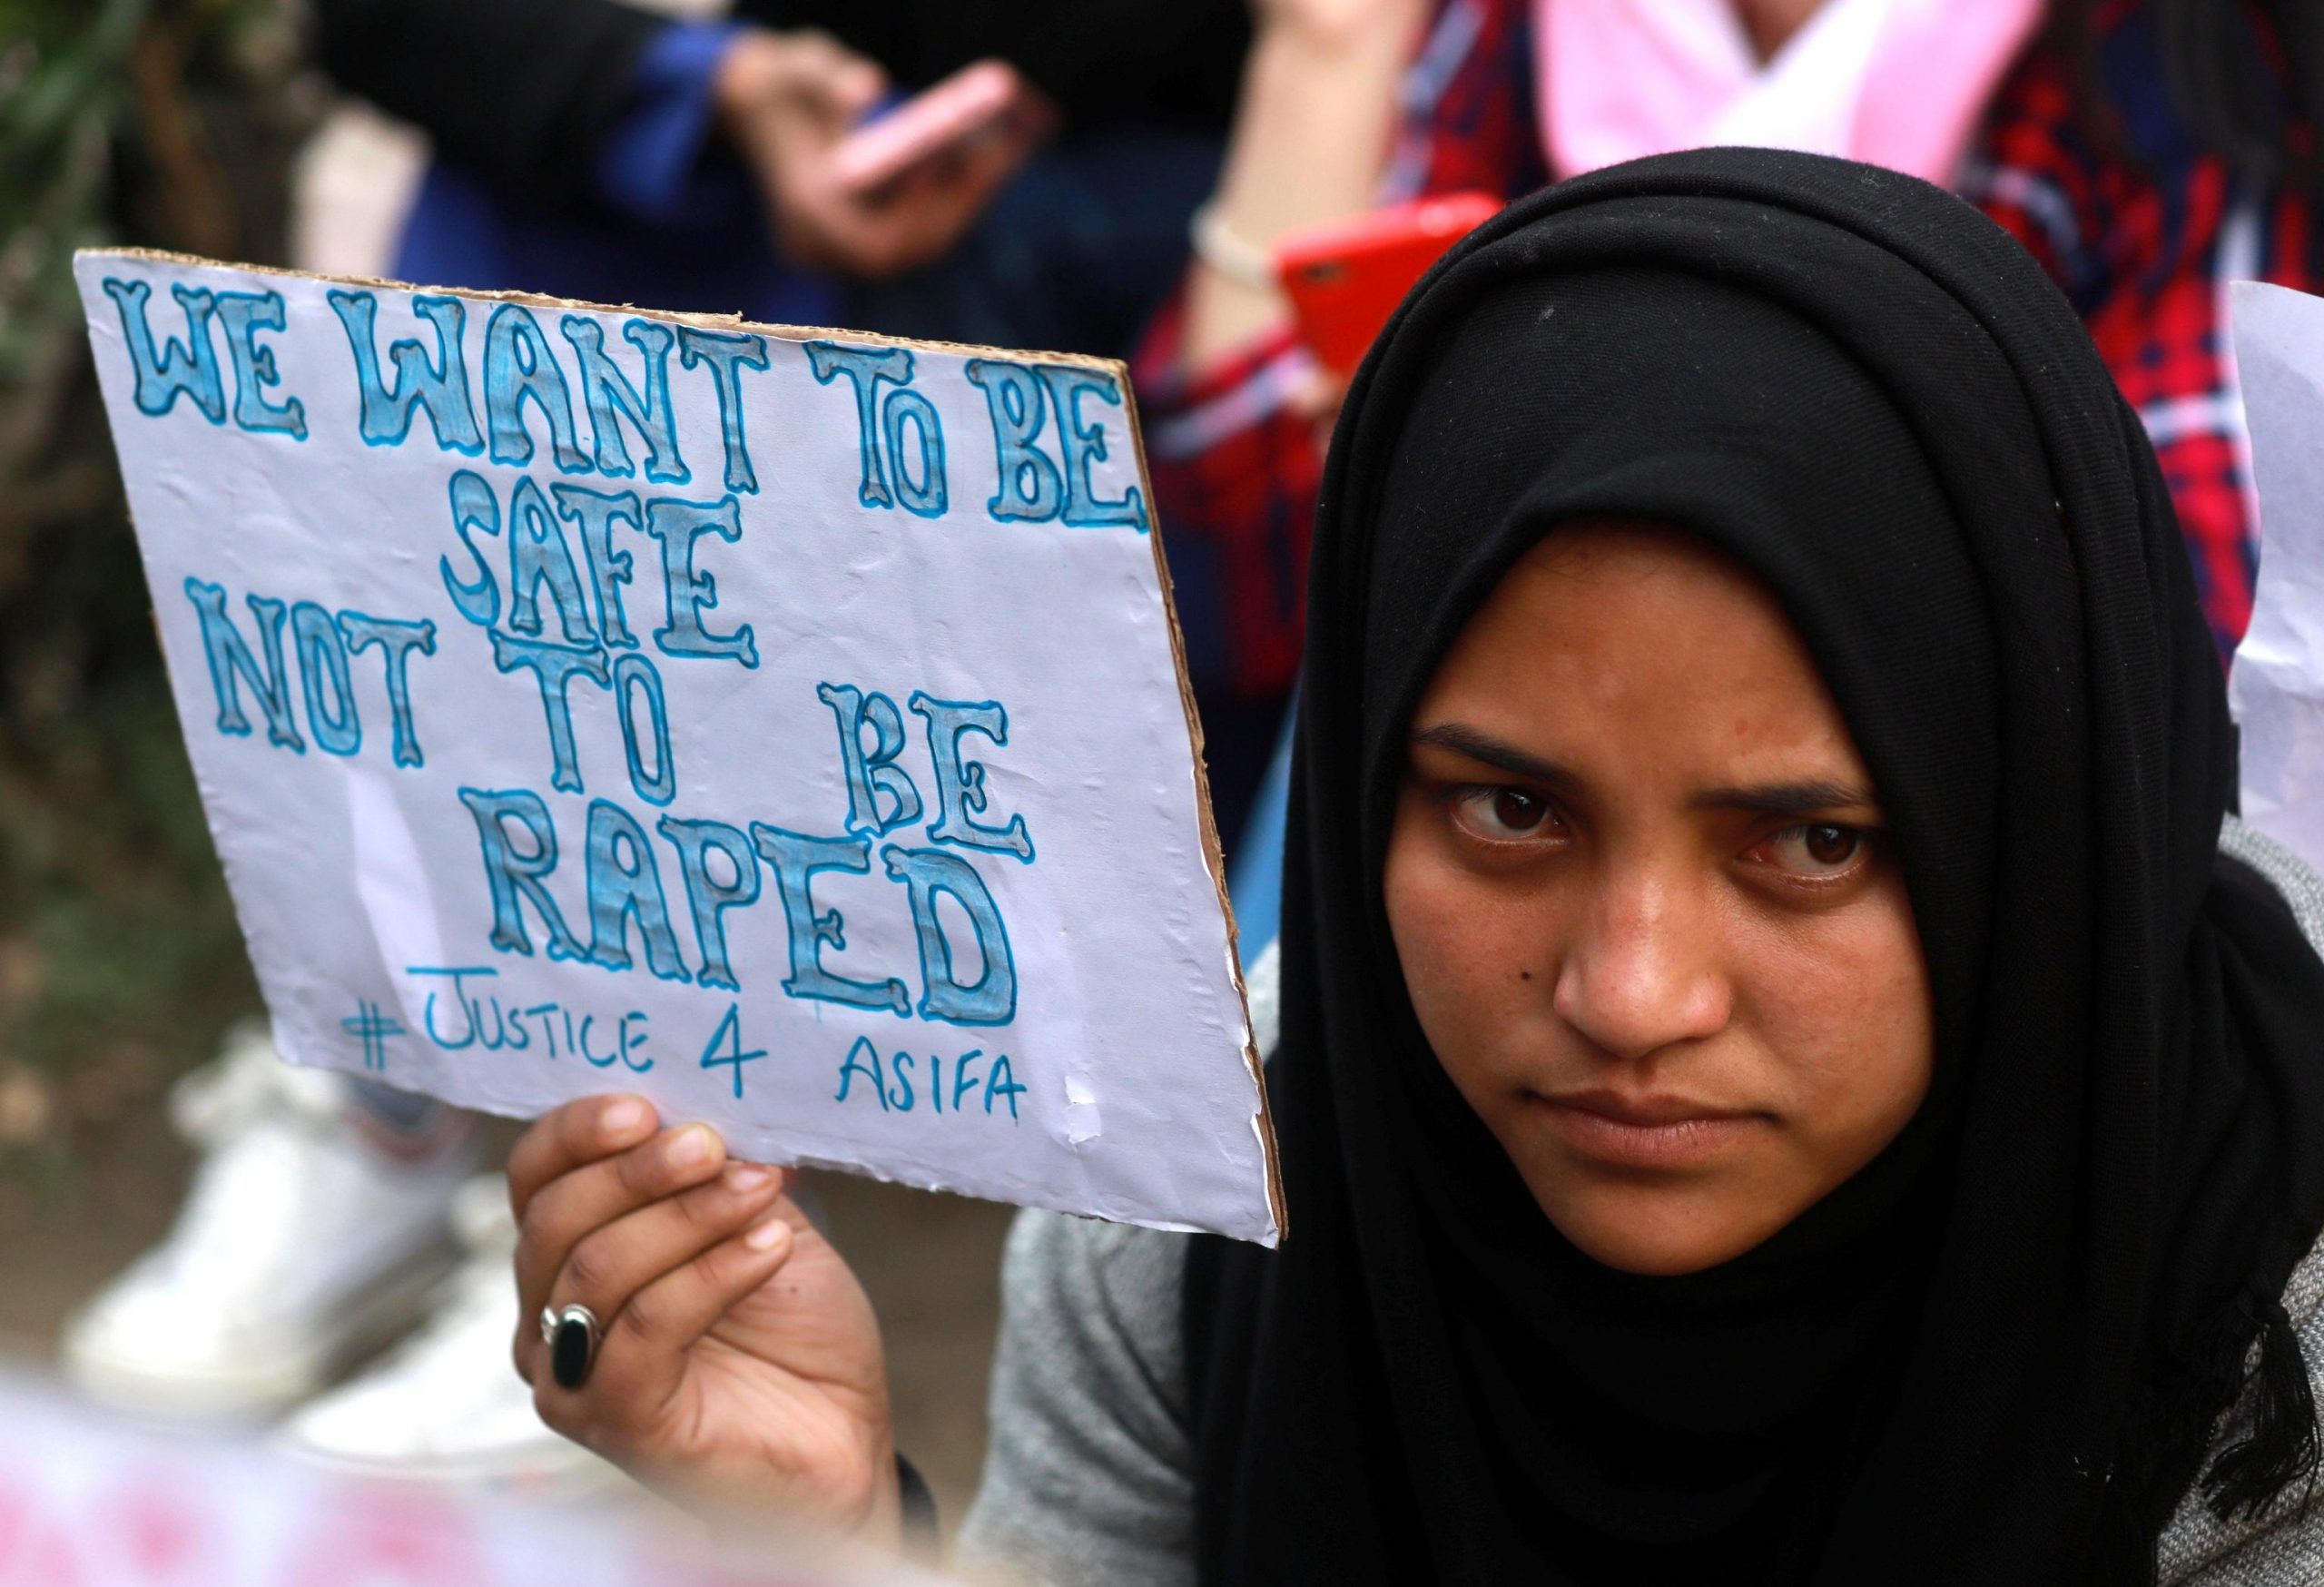 India, ragazza di 16 anni violentata e bruciata viva davanti ai genitori